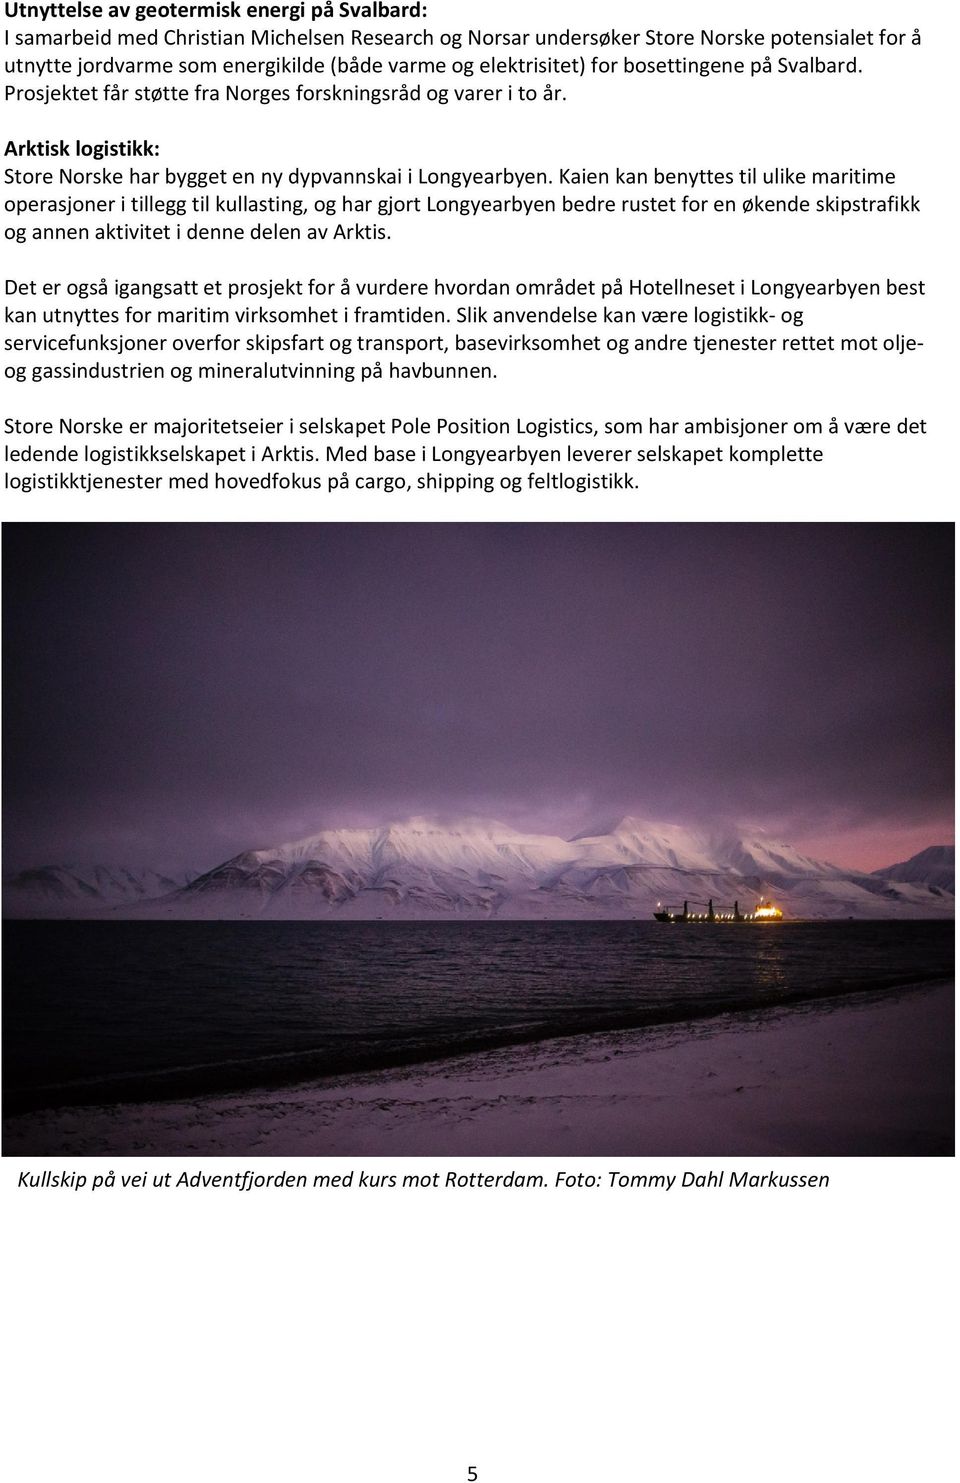 Kaien kan benyttes til ulike maritime operasjoner i tillegg til kullasting, og har gjort Longyearbyen bedre rustet for en økende skipstrafikk og annen aktivitet i denne delen av Arktis.